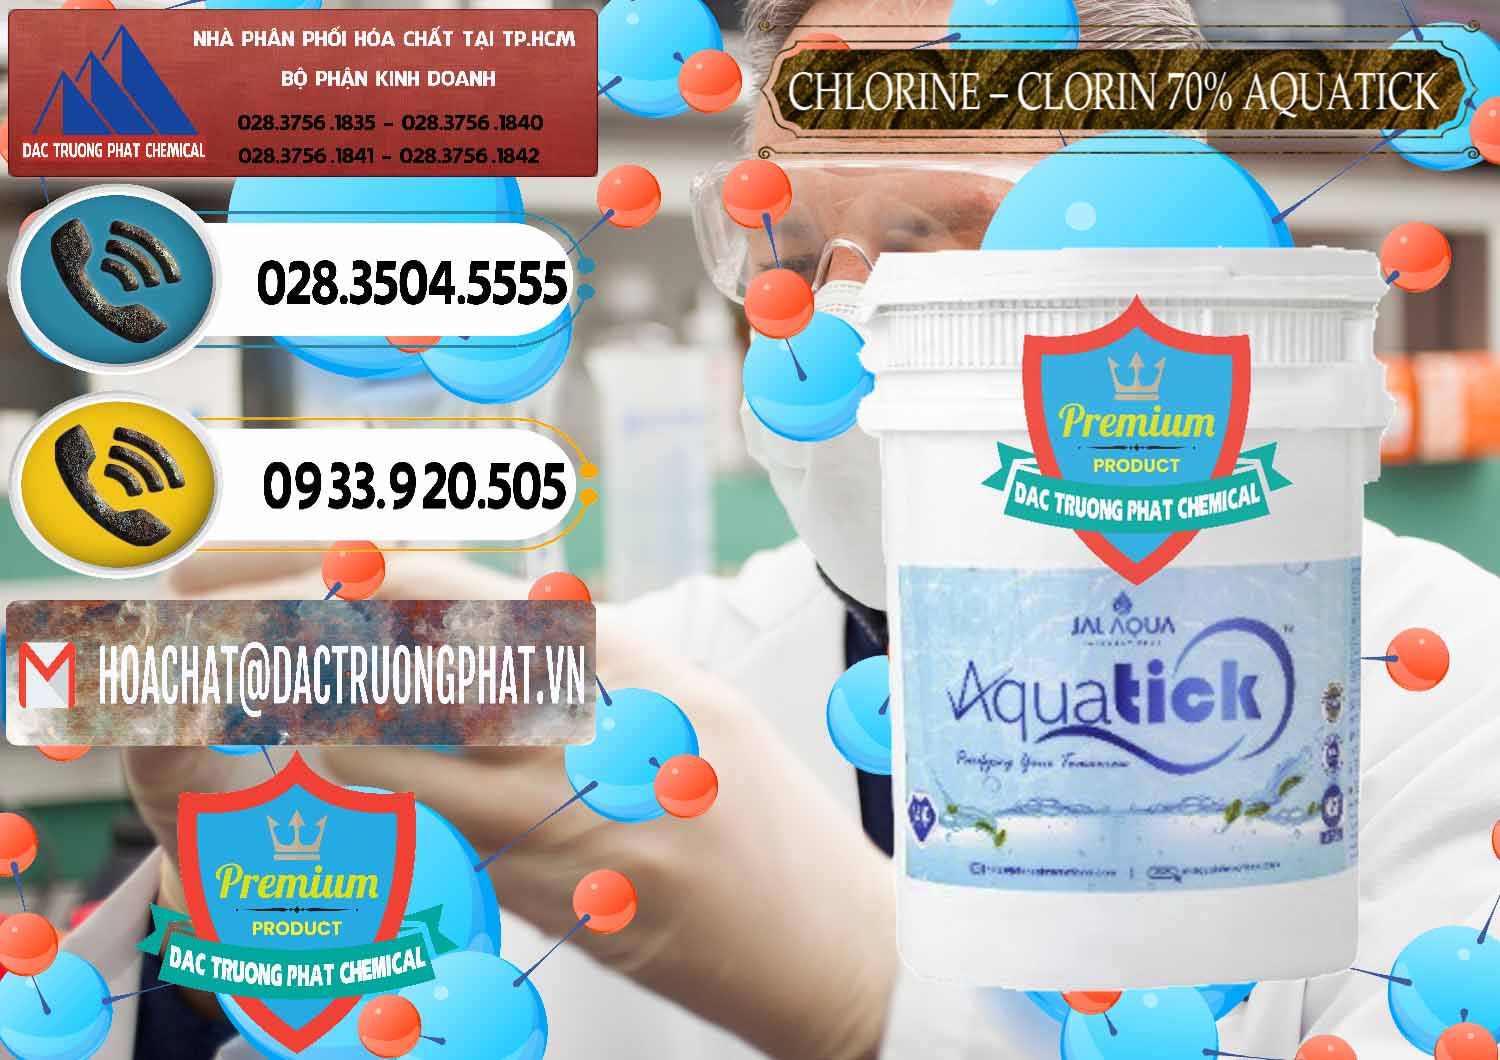 Công ty chuyên nhập khẩu và bán Chlorine – Clorin 70% Aquatick Thùng Cao Jal Aqua Ấn Độ India - 0237 - Cty phân phối _ cung cấp hóa chất tại TP.HCM - hoachatdetnhuom.vn